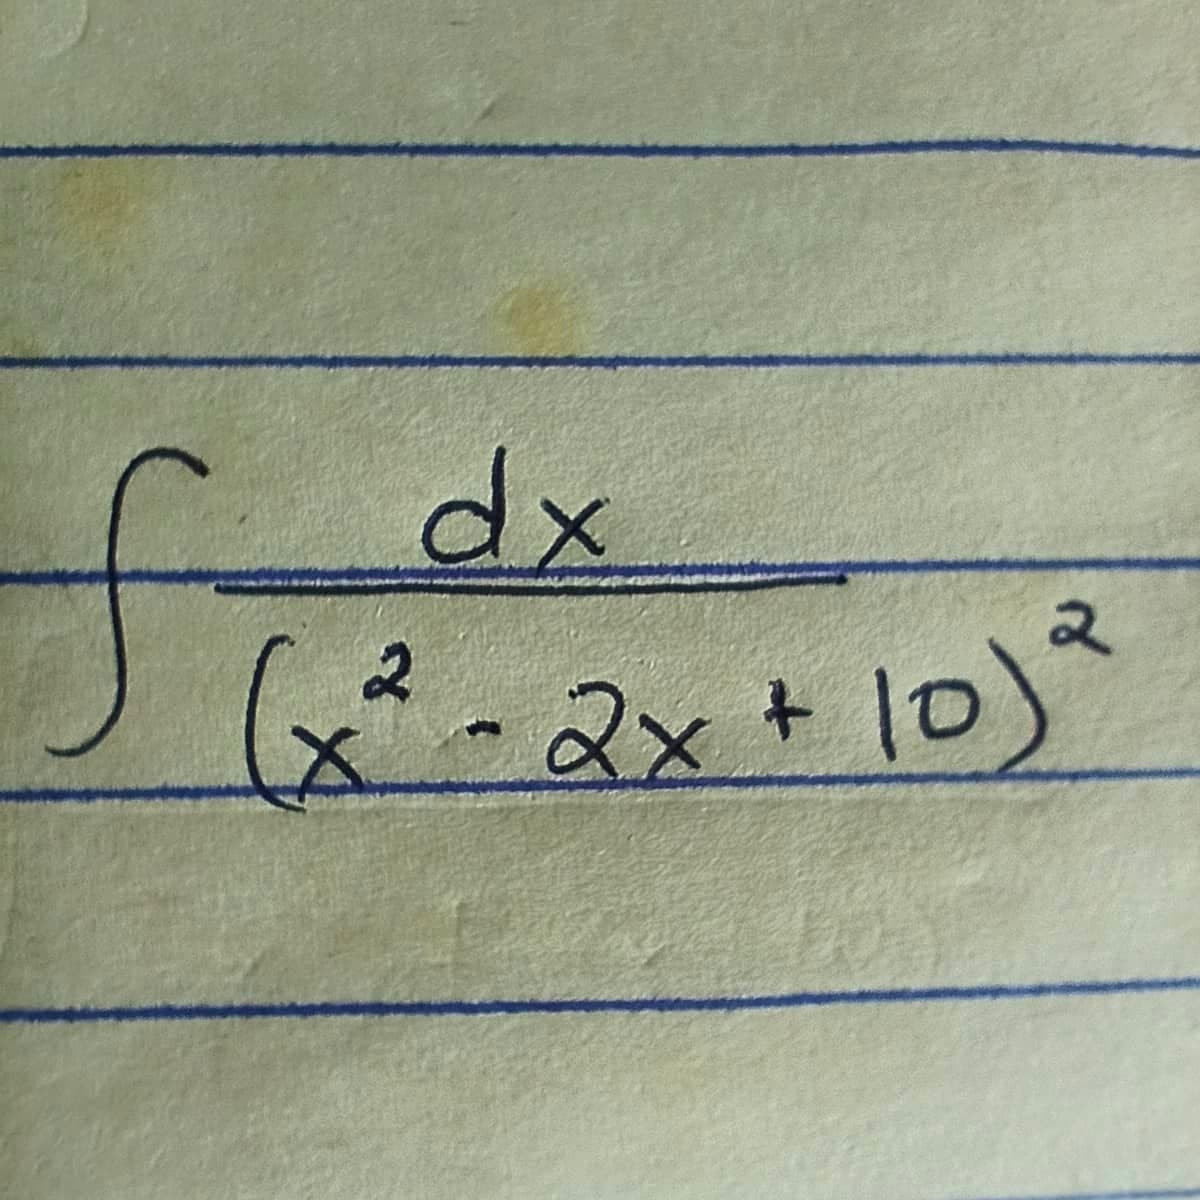 fi
dx
२
(x² - 2x + 10) ²